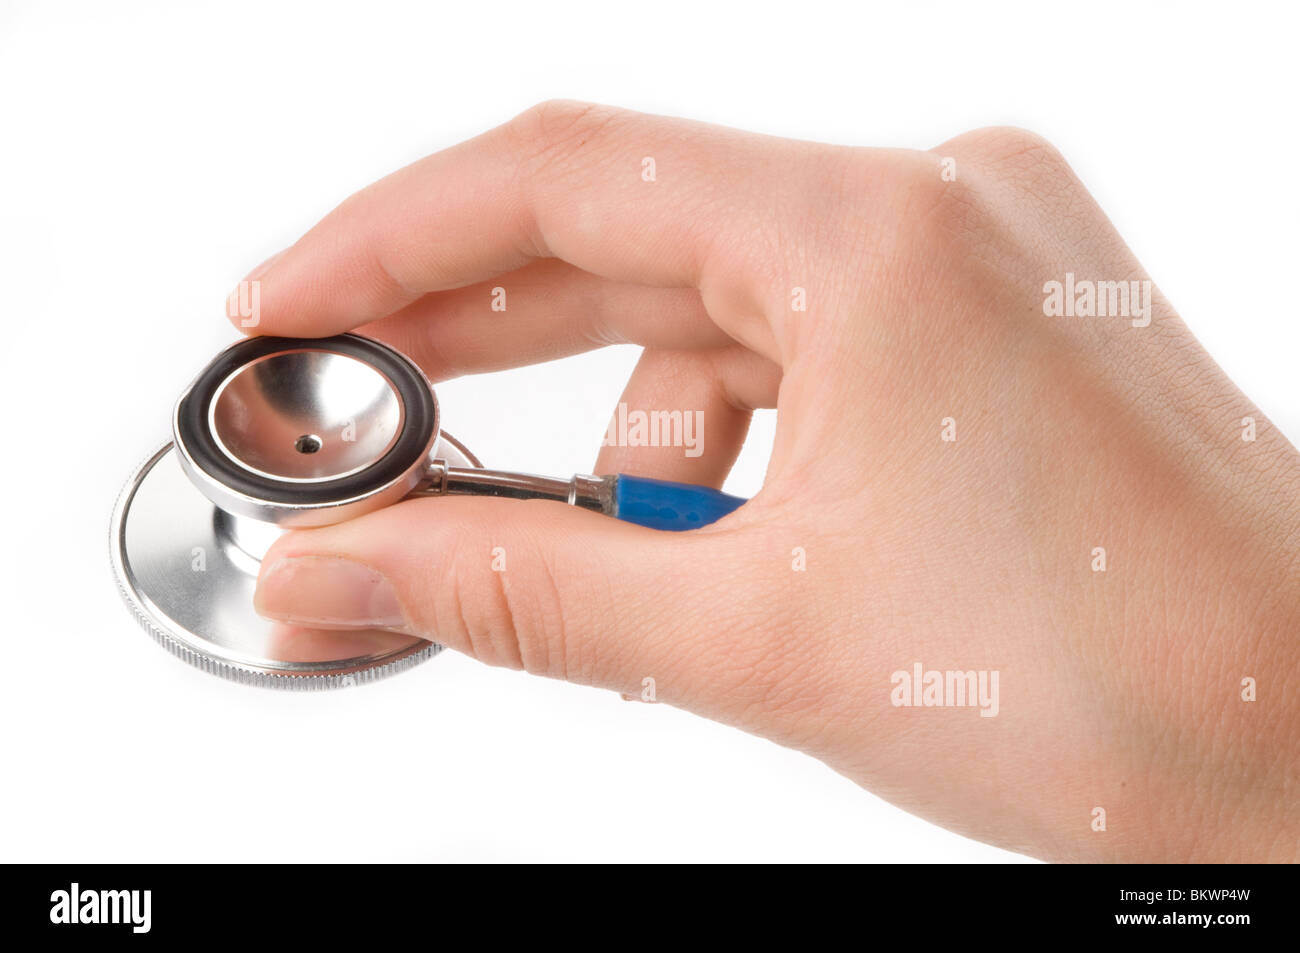 hand holding medical stethoscope Stock Photo